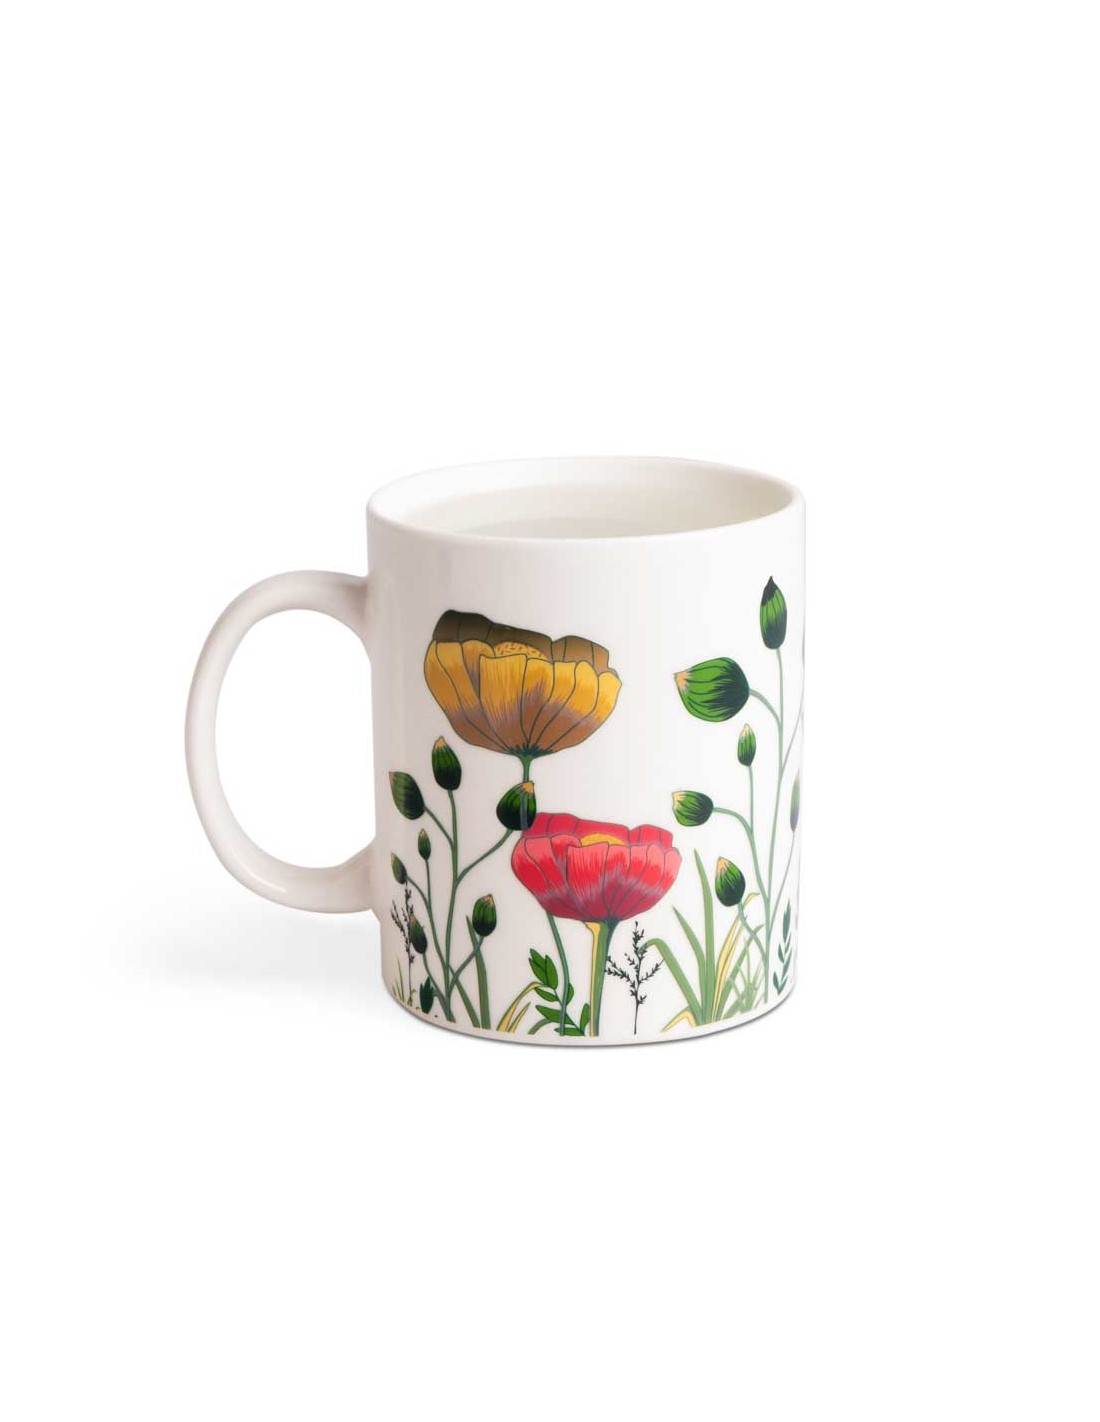 Tazza mug cambia colore con disegno fiori - BLOOM by Balvi│Balena